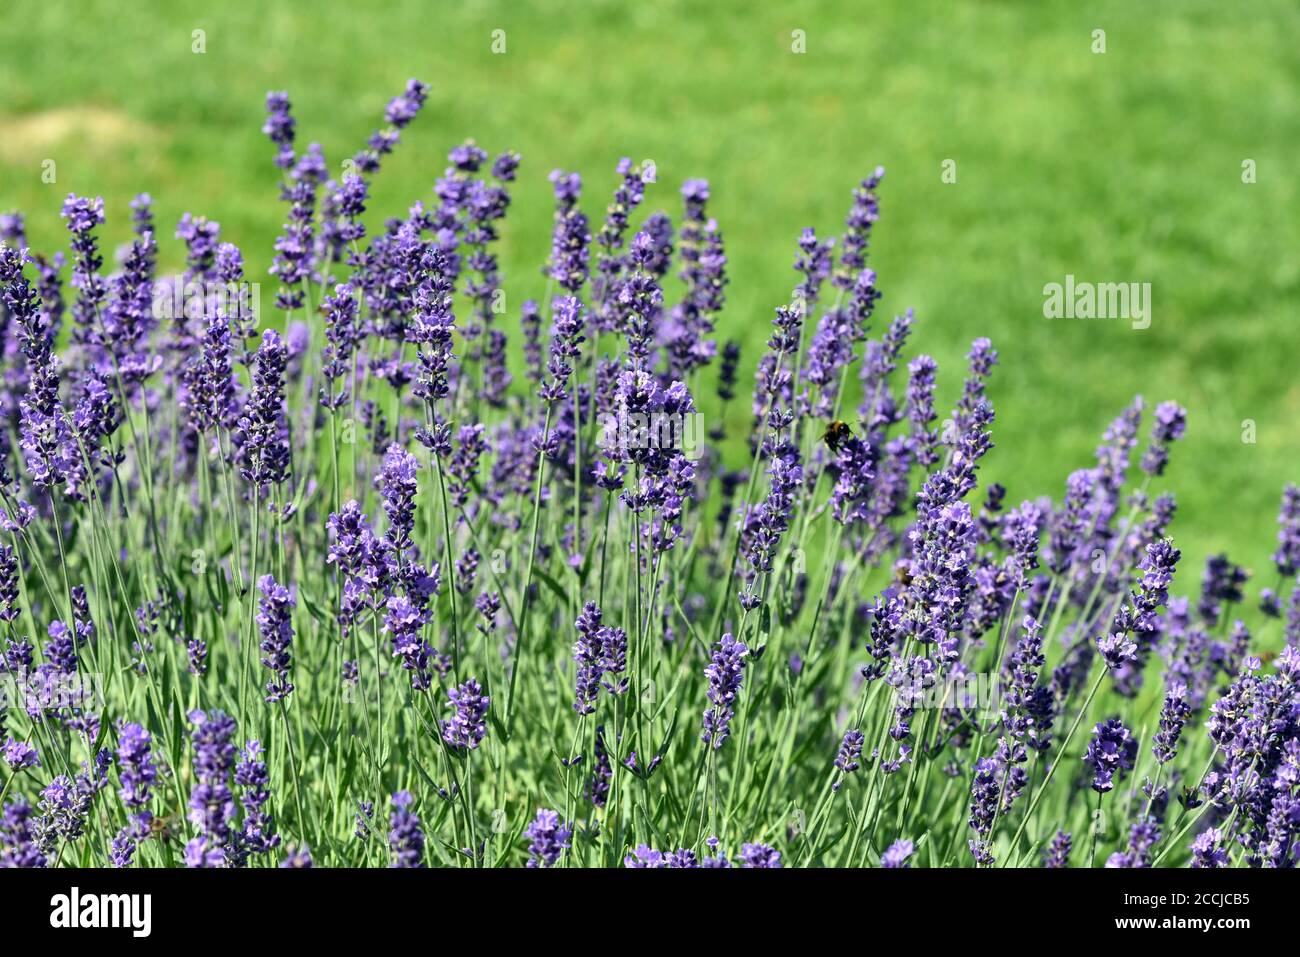 Lavendel, lavendel officinalis ist eine wichtige Heilpflanze und eine Duftpflanze mit blauen Blueten und wird in der Medizin verwendet. Lavendel, lav Stockfoto